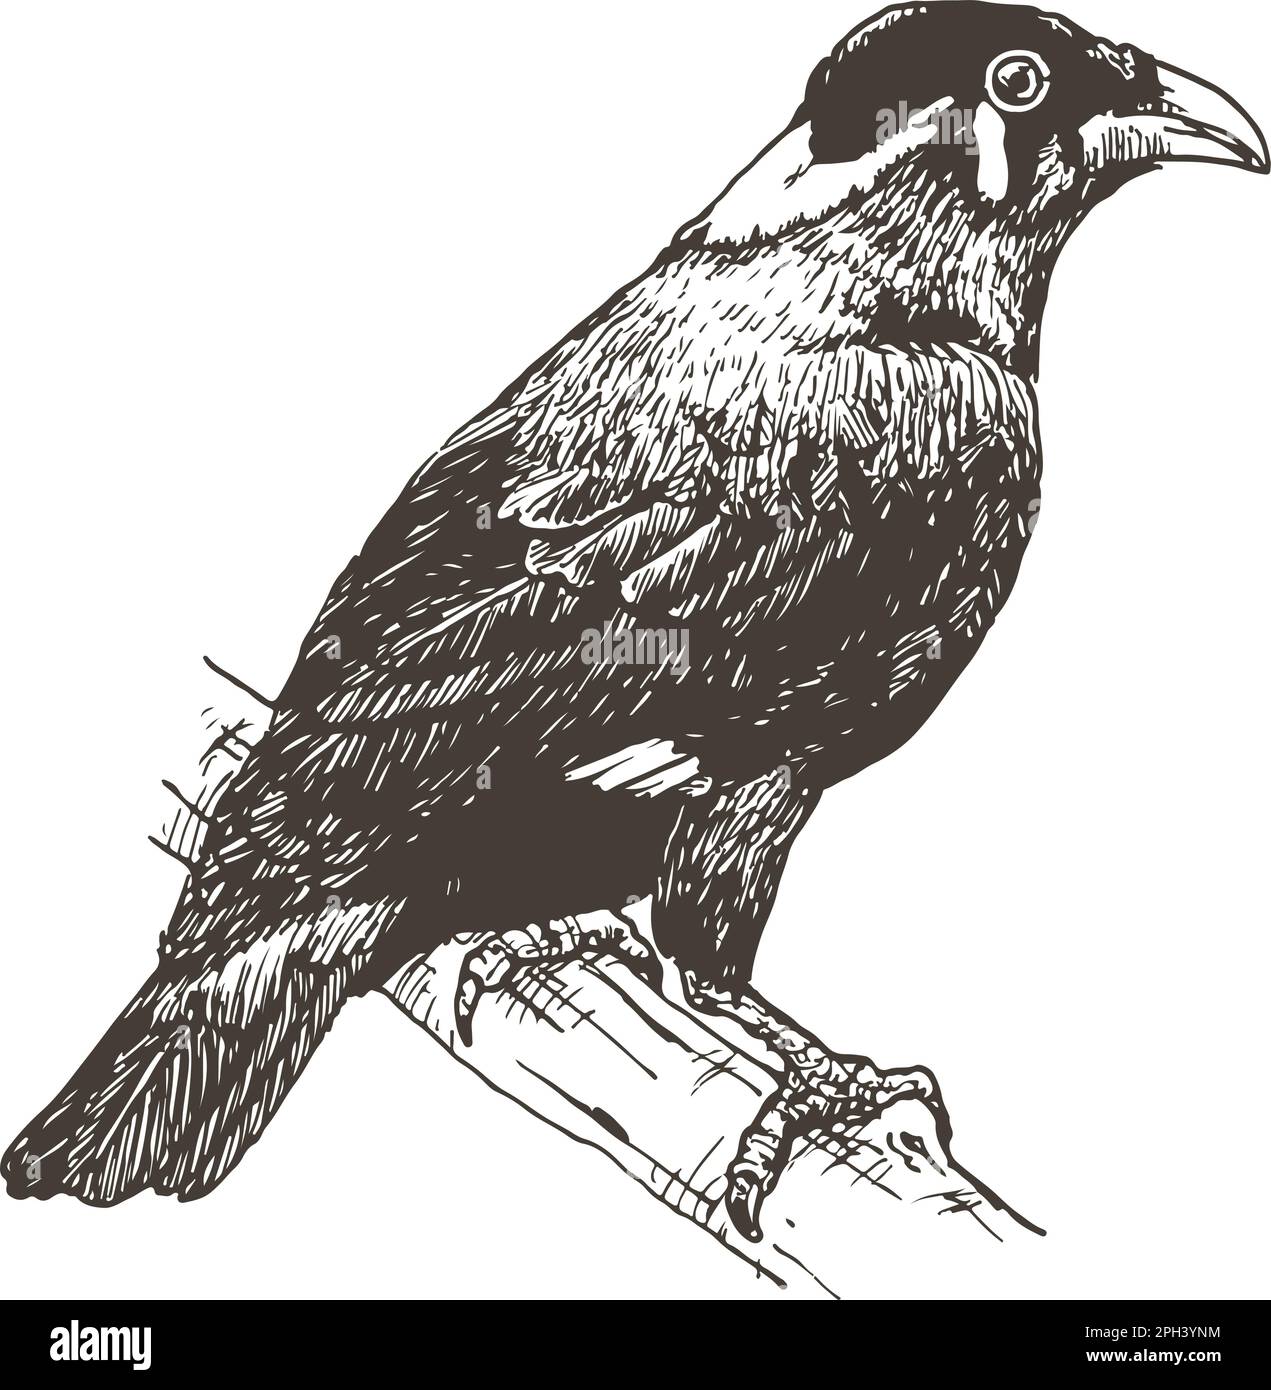 mynah hill, uccello che imita la lingua umana, disegnata a mano, illustrazione vettoriale Illustrazione Vettoriale